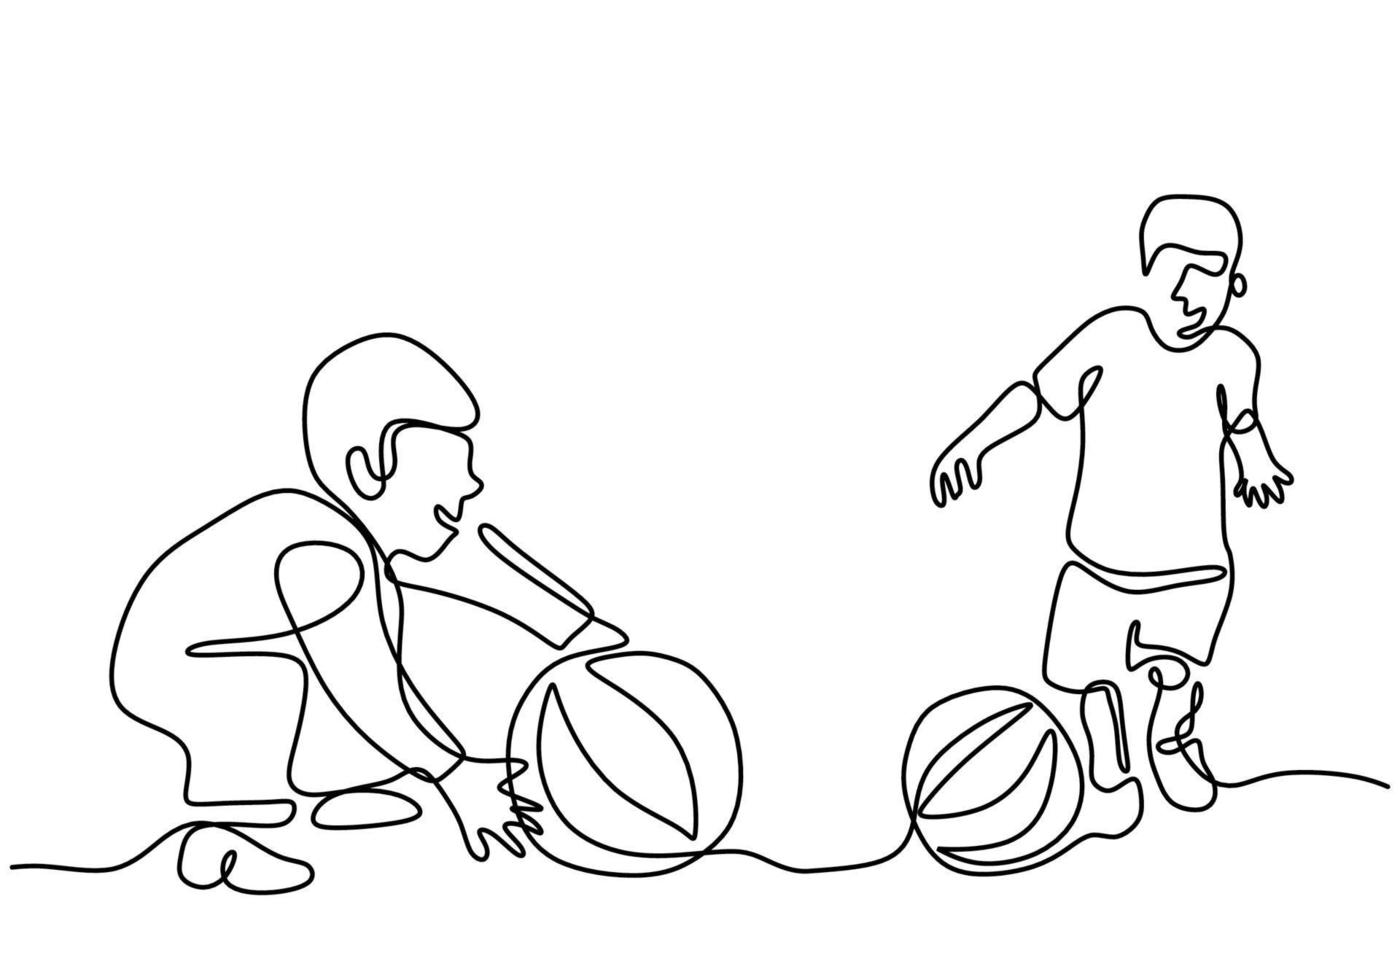 twee kleine jongen samenspelen een doorlopende lijntekening vectorillustratie geïsoleerd op een witte achtergrond. gelukkige kinderen spelen bal op veld. speel leuke ideeën in een minimalistisch ontwerpconcept vector